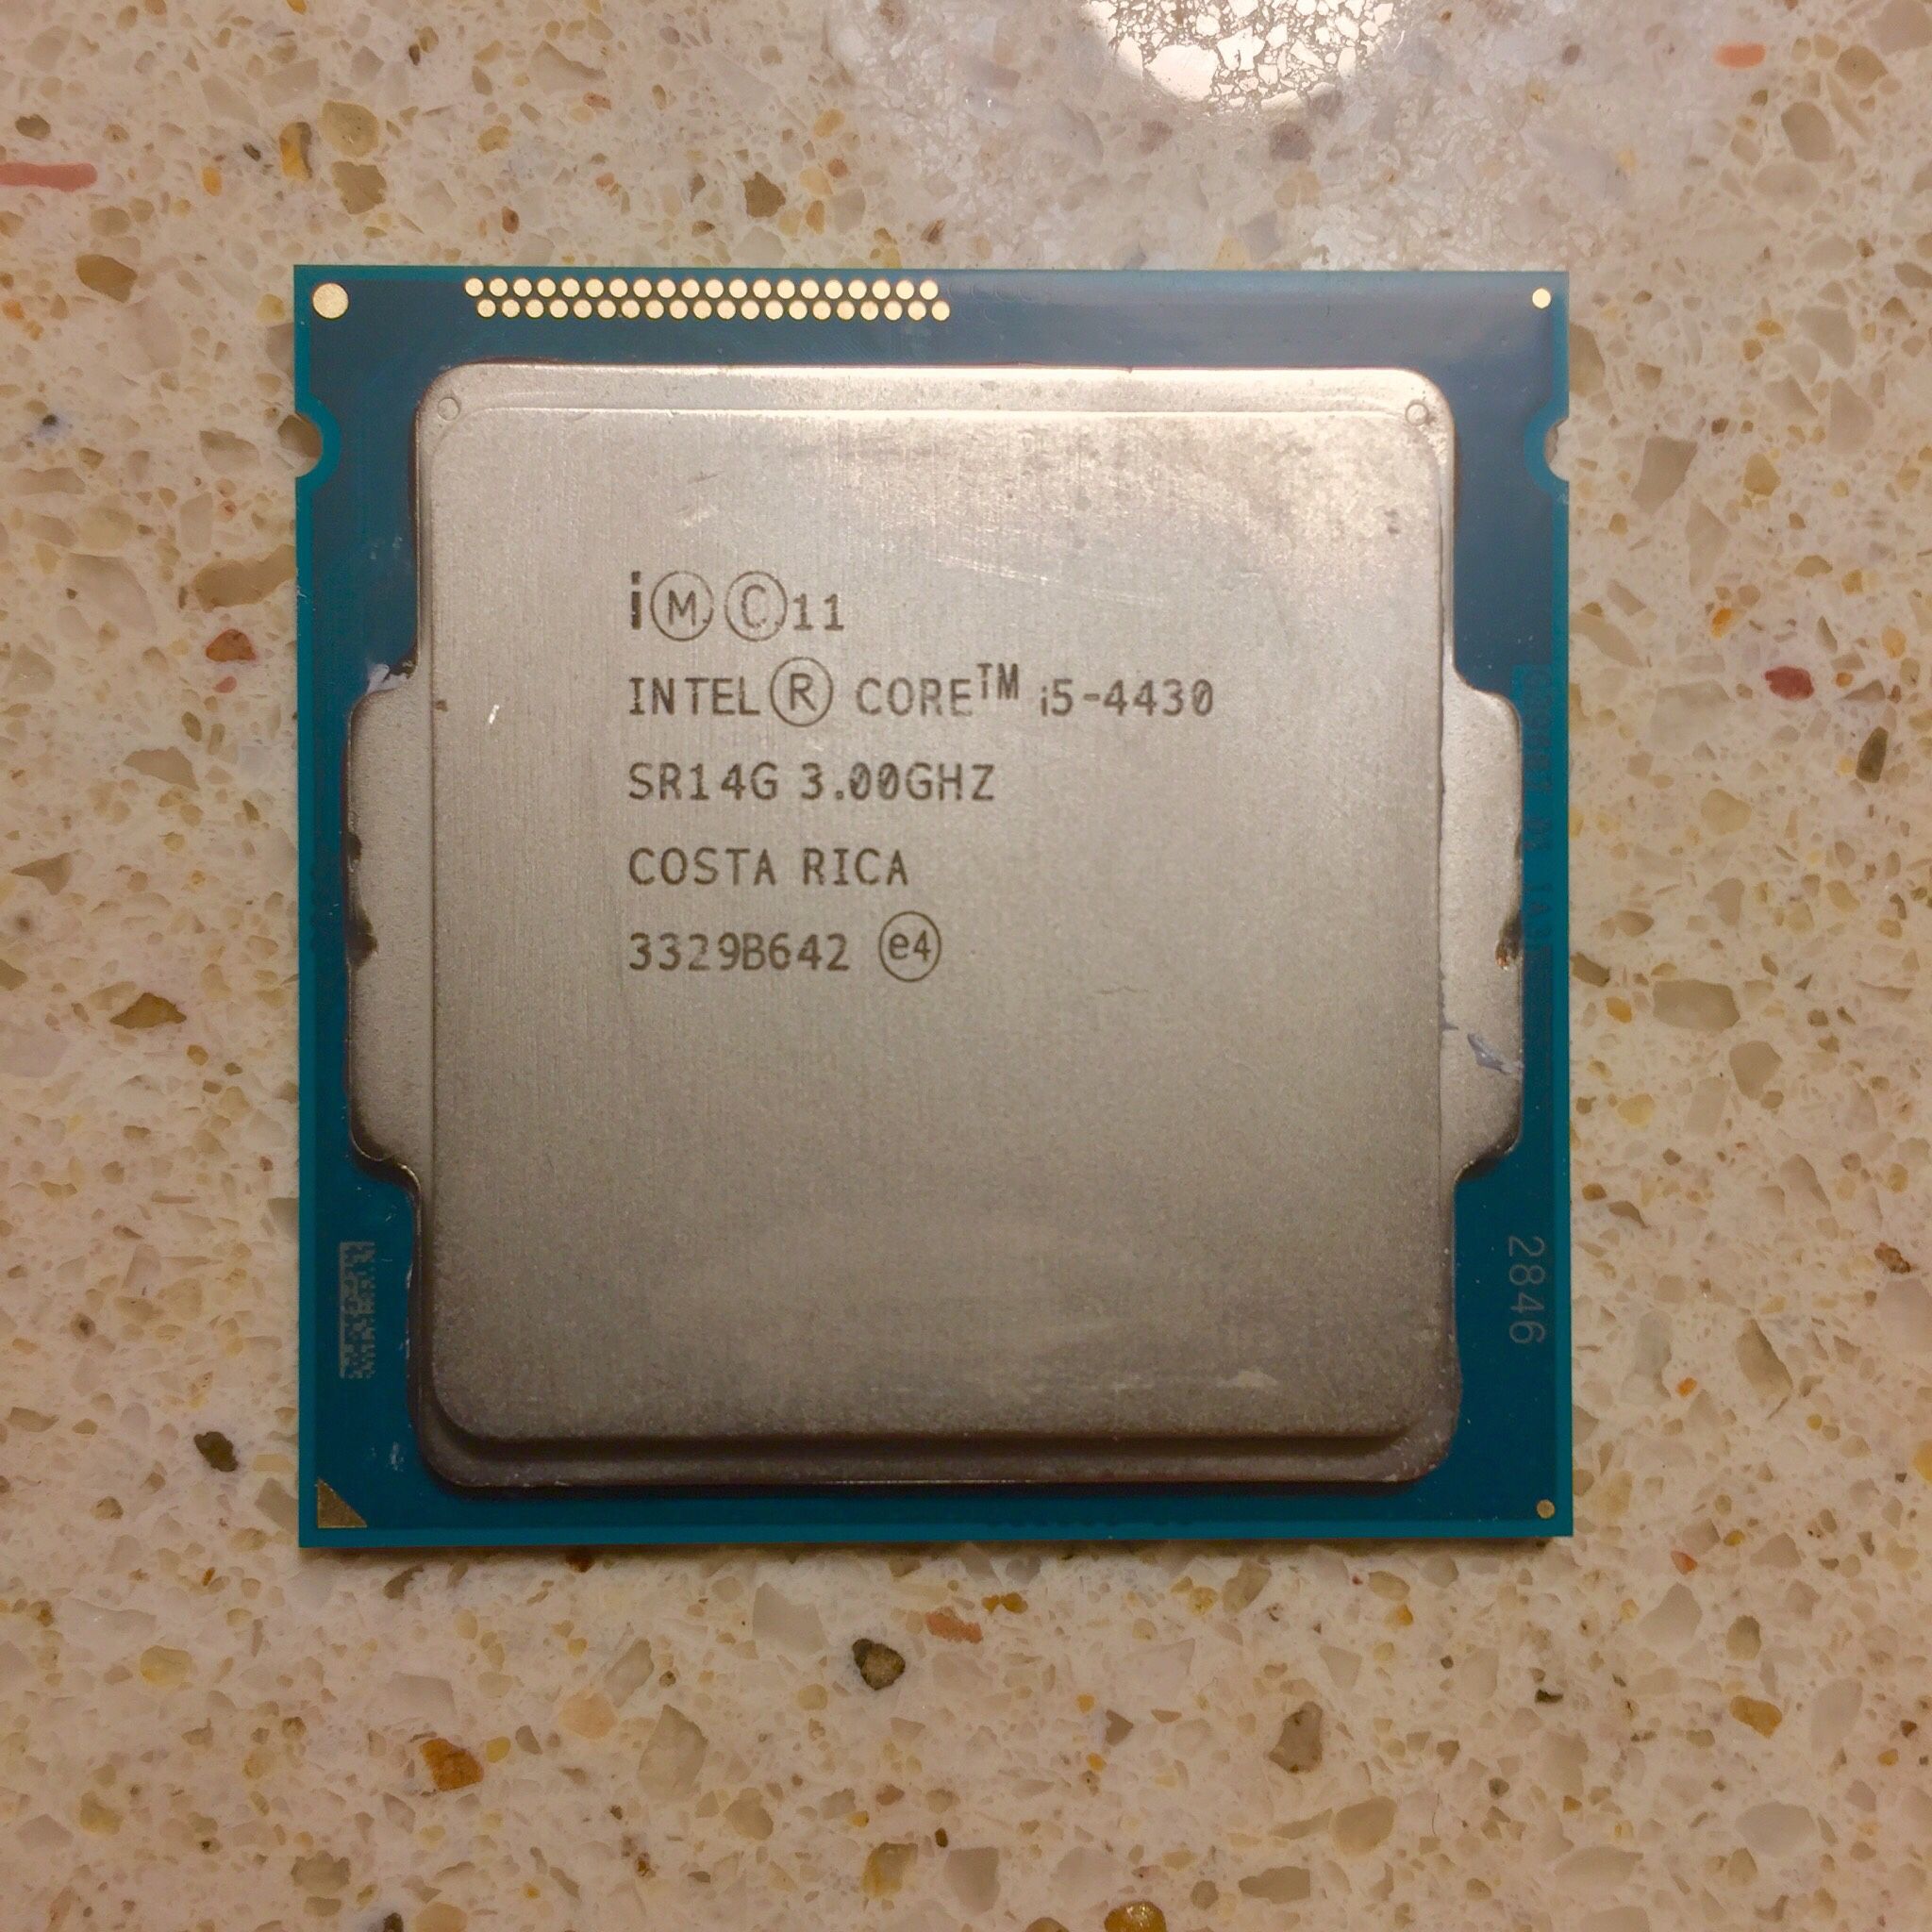 Intel i5-4430 CPU